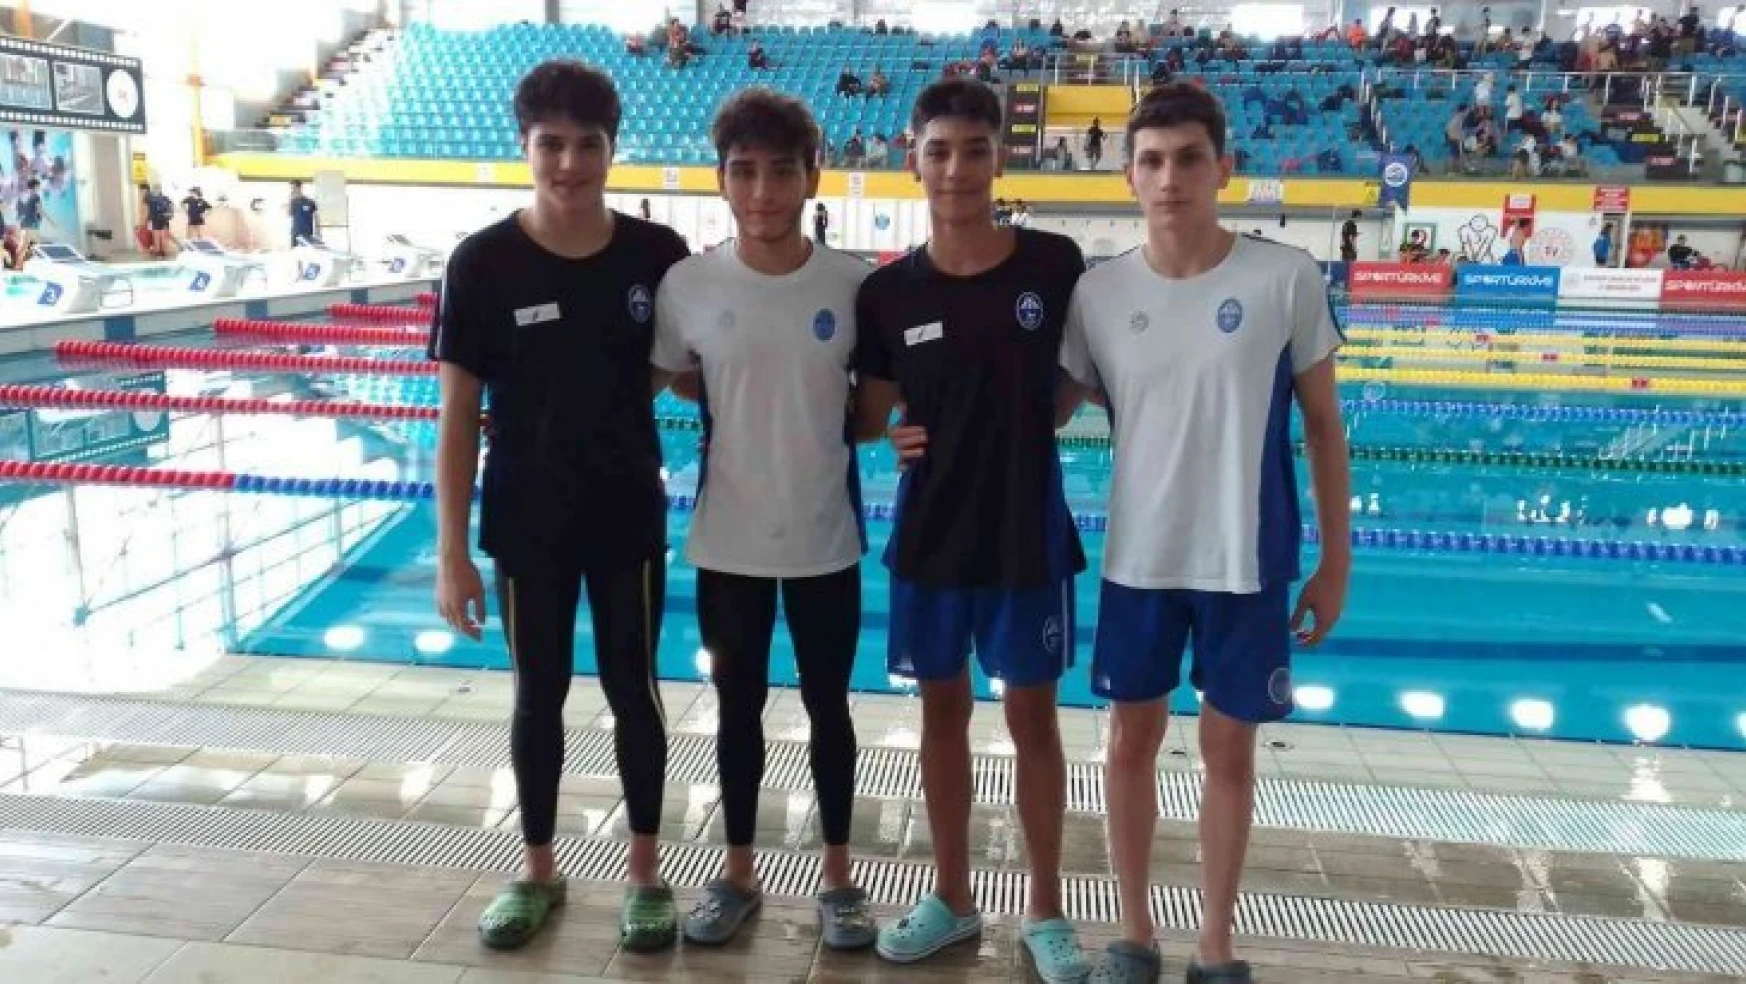 Paletli Yüzme Şampiyonası'nda dereceye giren yarışmacılara ödülleri verildi